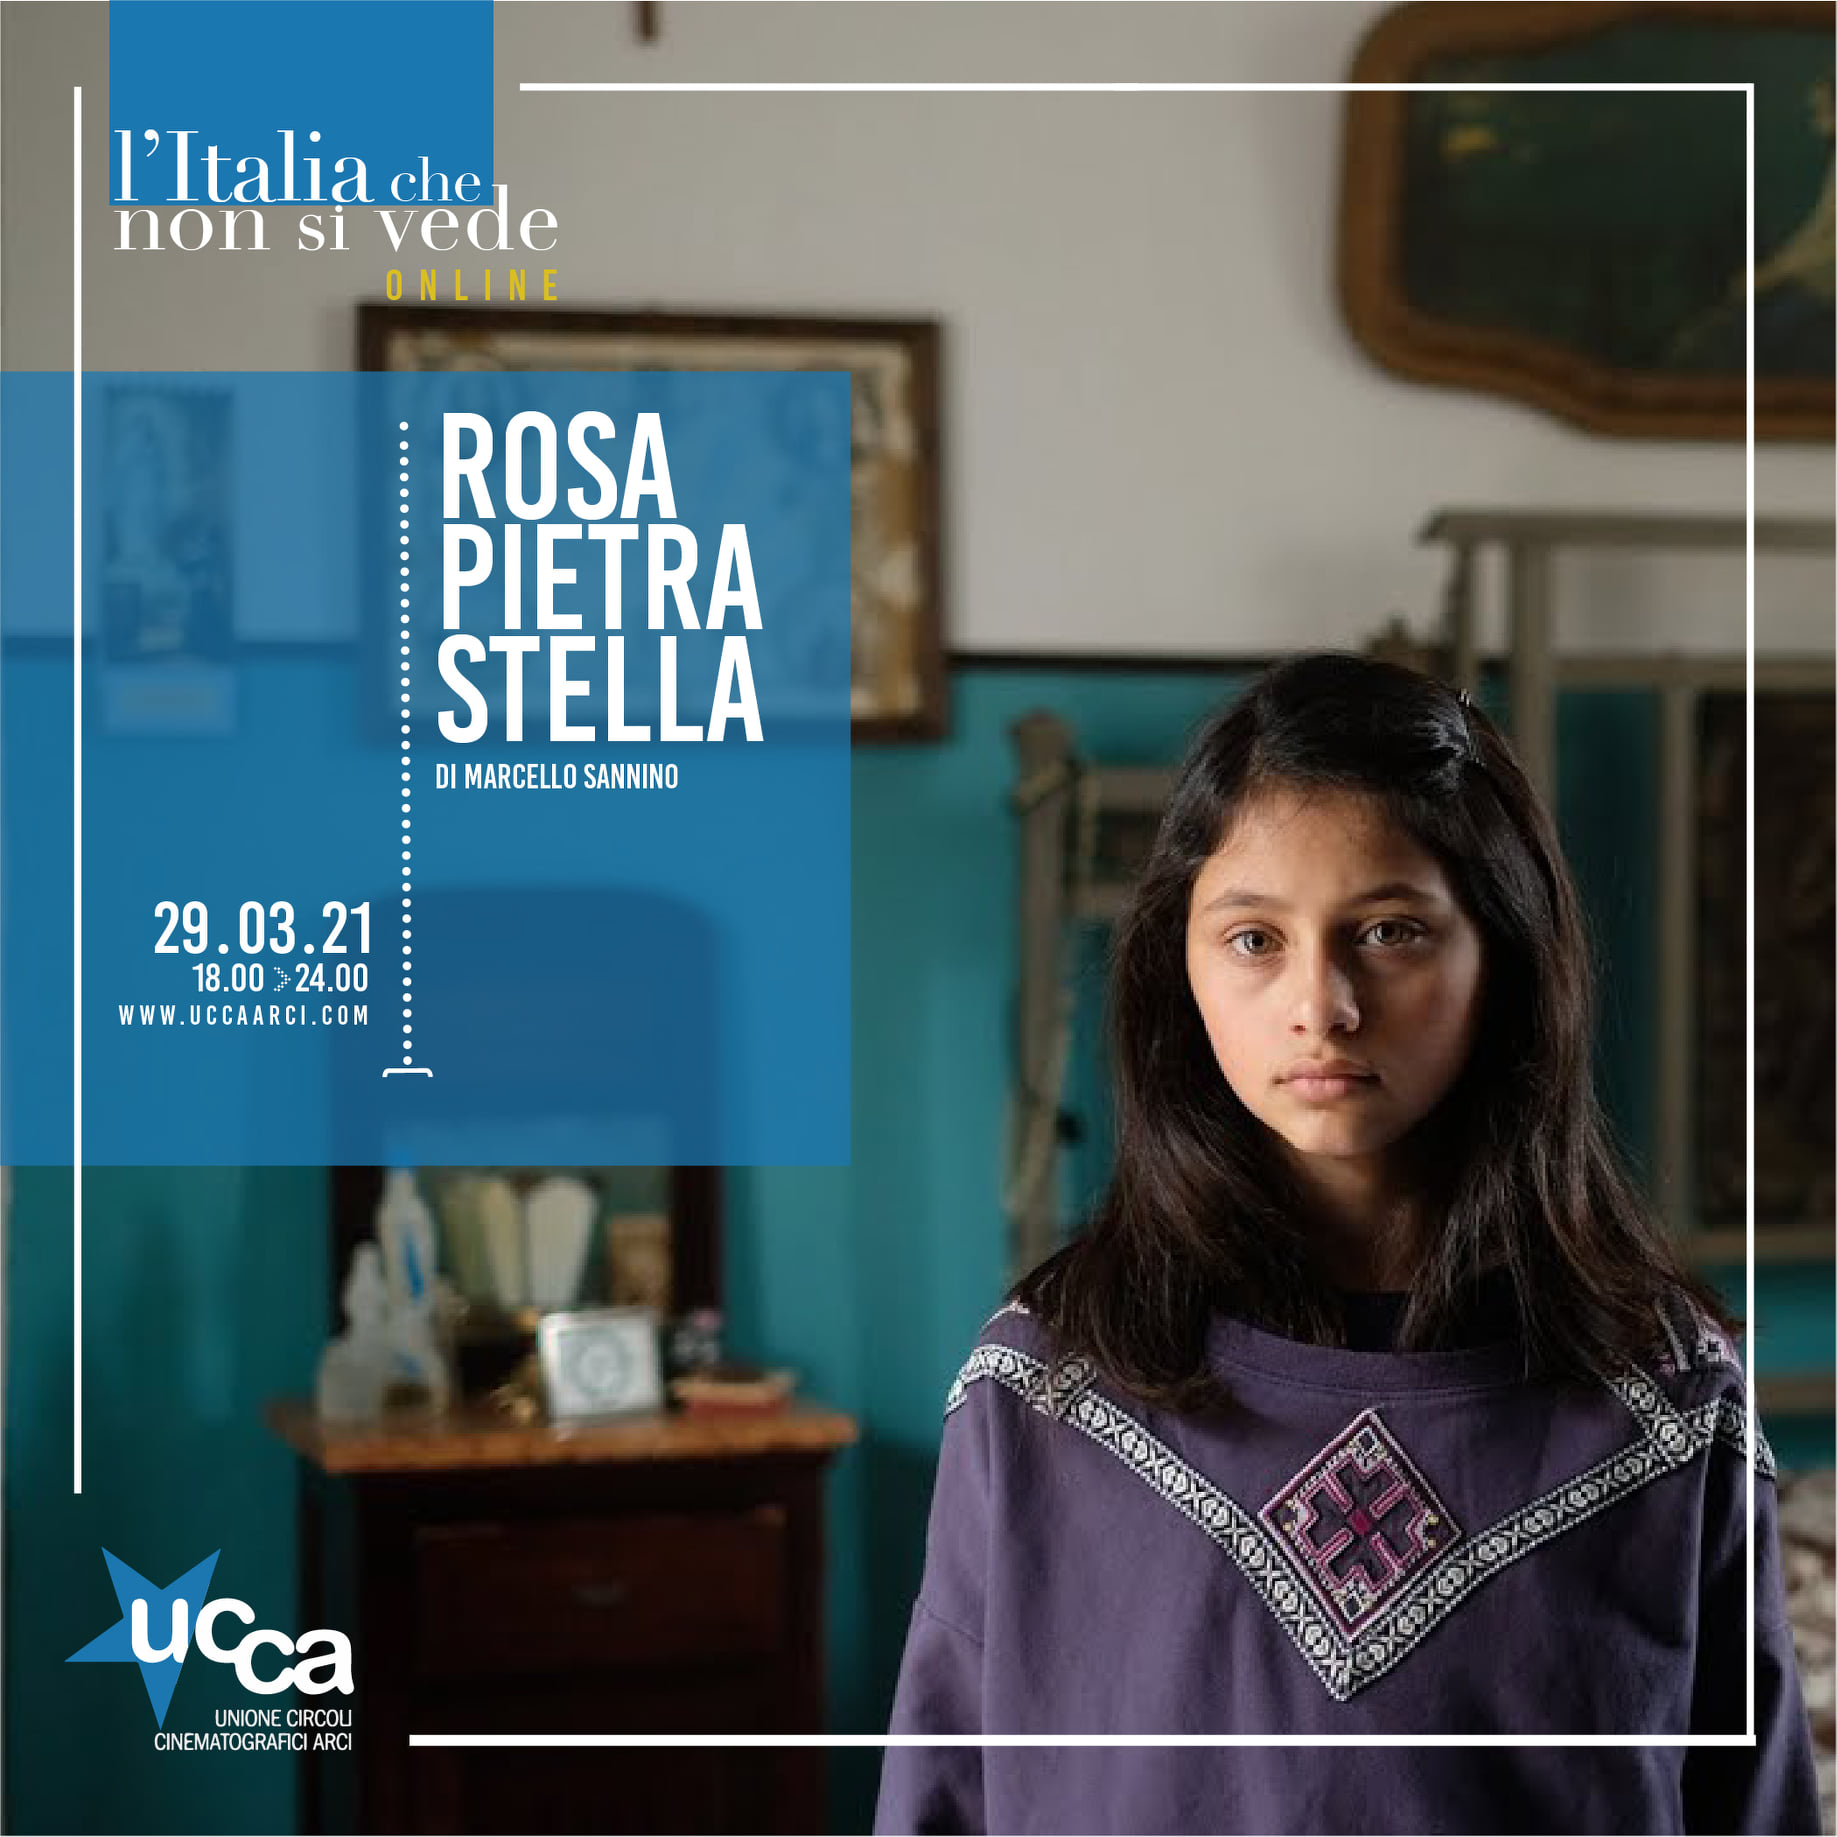 ROSA PIETRA STELLA in streaming gratuito!